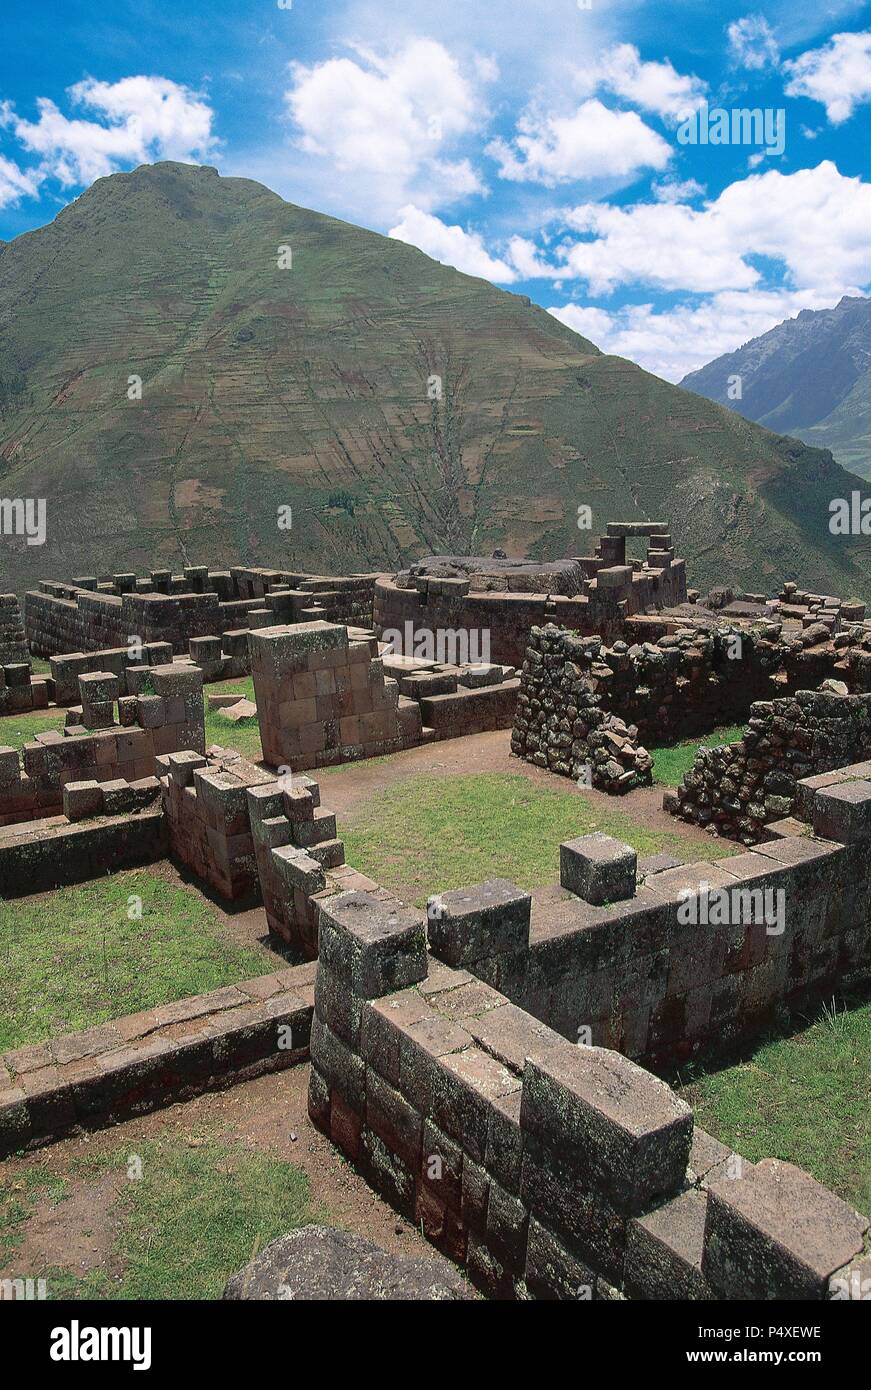 ARTE PRECOLOMBINO. INCA. PERU. PISAC. Vista de las ruinas del INTIWATANA, sector principal de la ciudad, dedicado a la adoración de los dioses y a la observación astronómica. Valle Sagrado de los Incas. Stock Photo